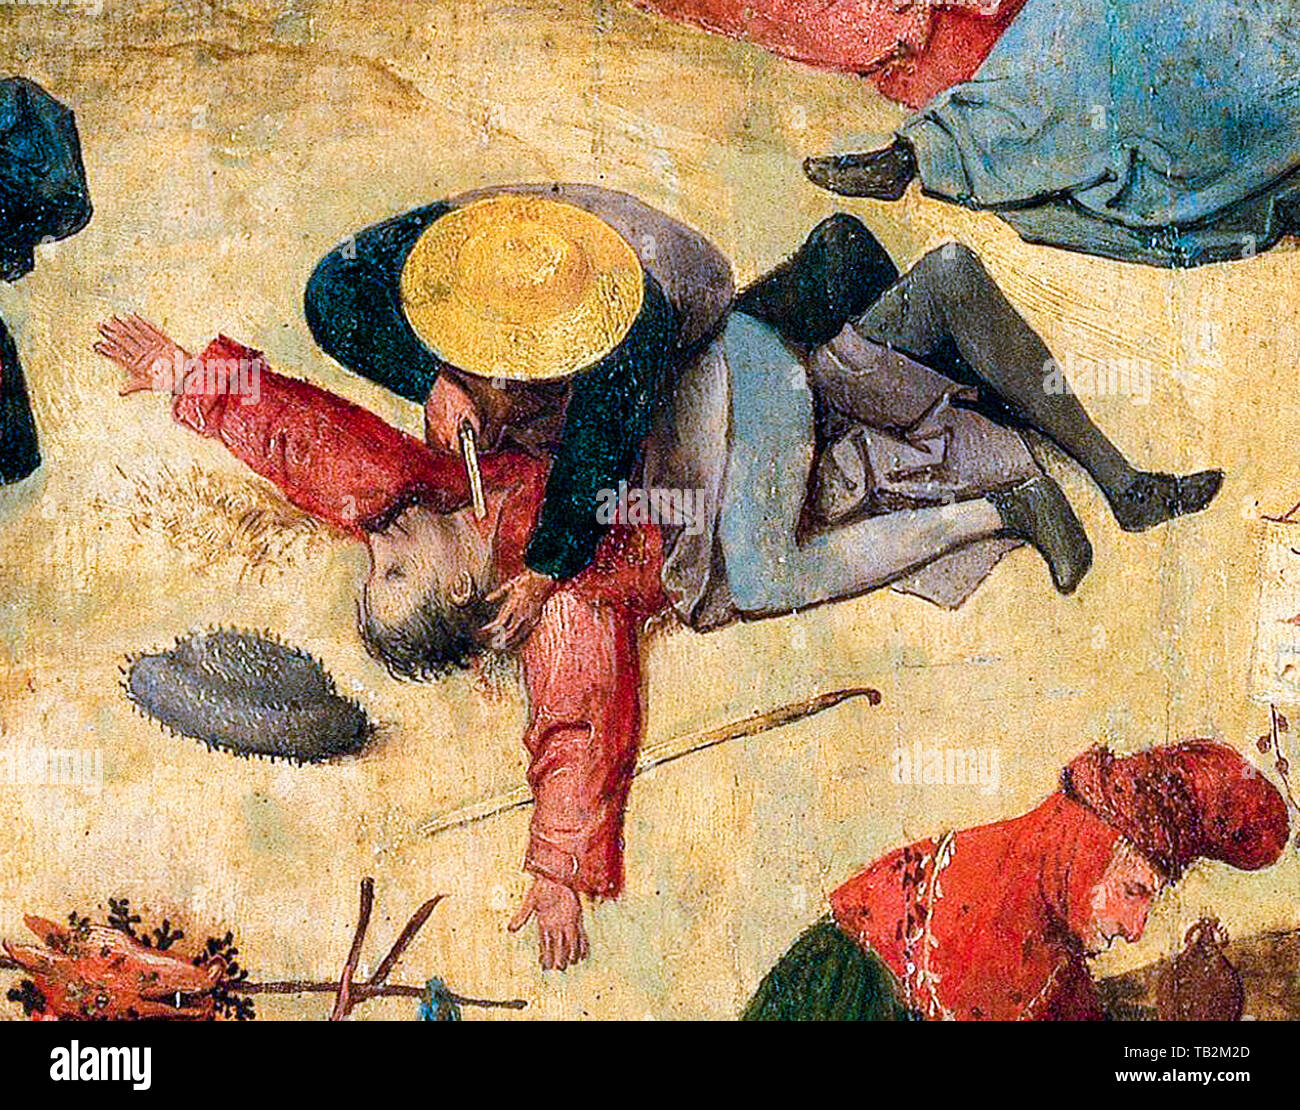 Hieronymus Bosch, el vagón Hay (Prado), panel central, Detalle, el hombre corta la garganta de otro hombre con un cuchillo, asesinato, pintura, alrededor de 1516 Foto de stock